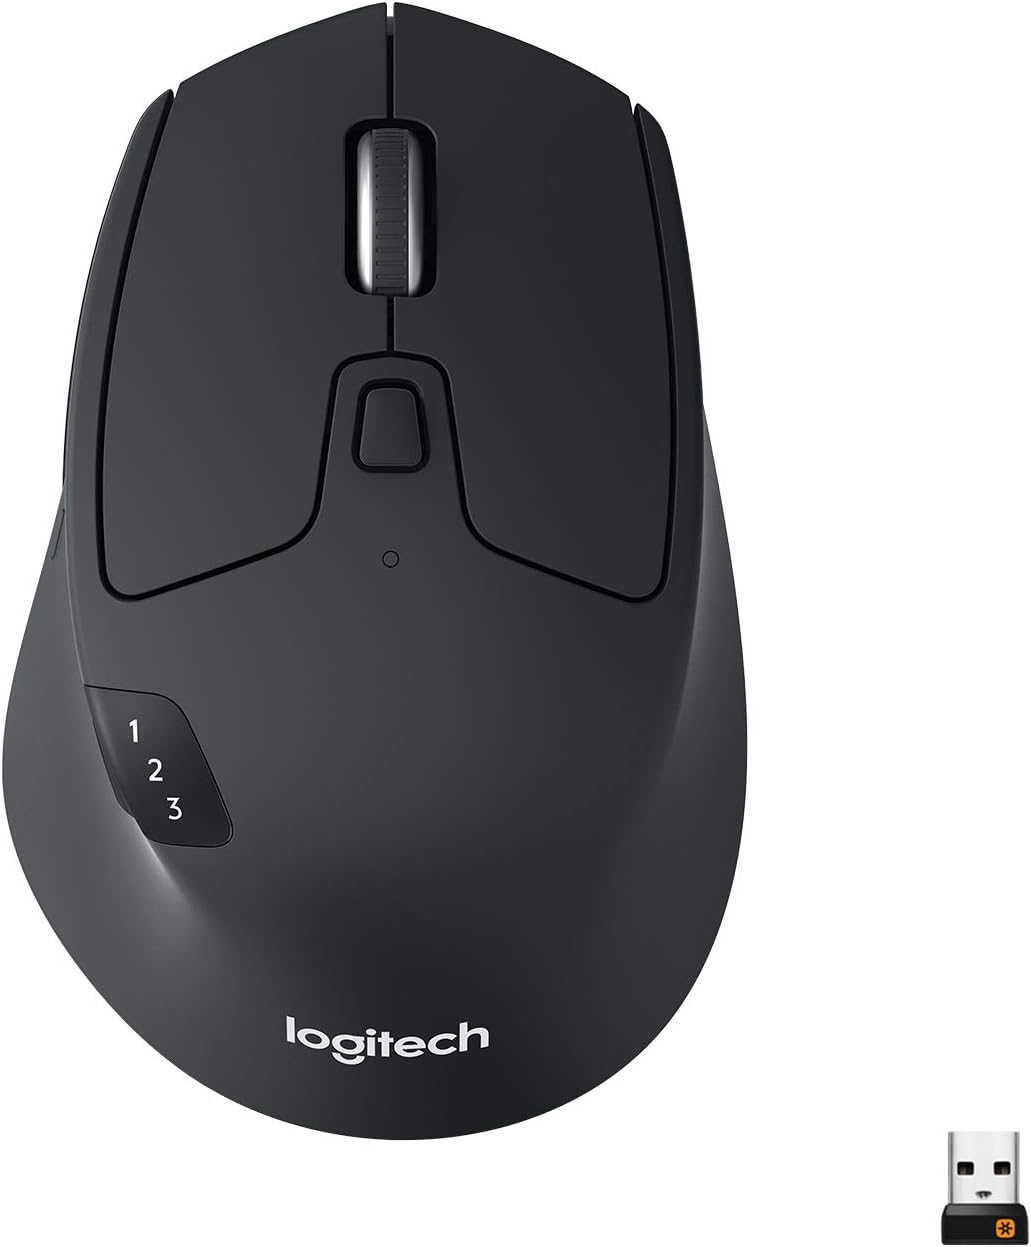 An image of a black Logitech M730 mouse.